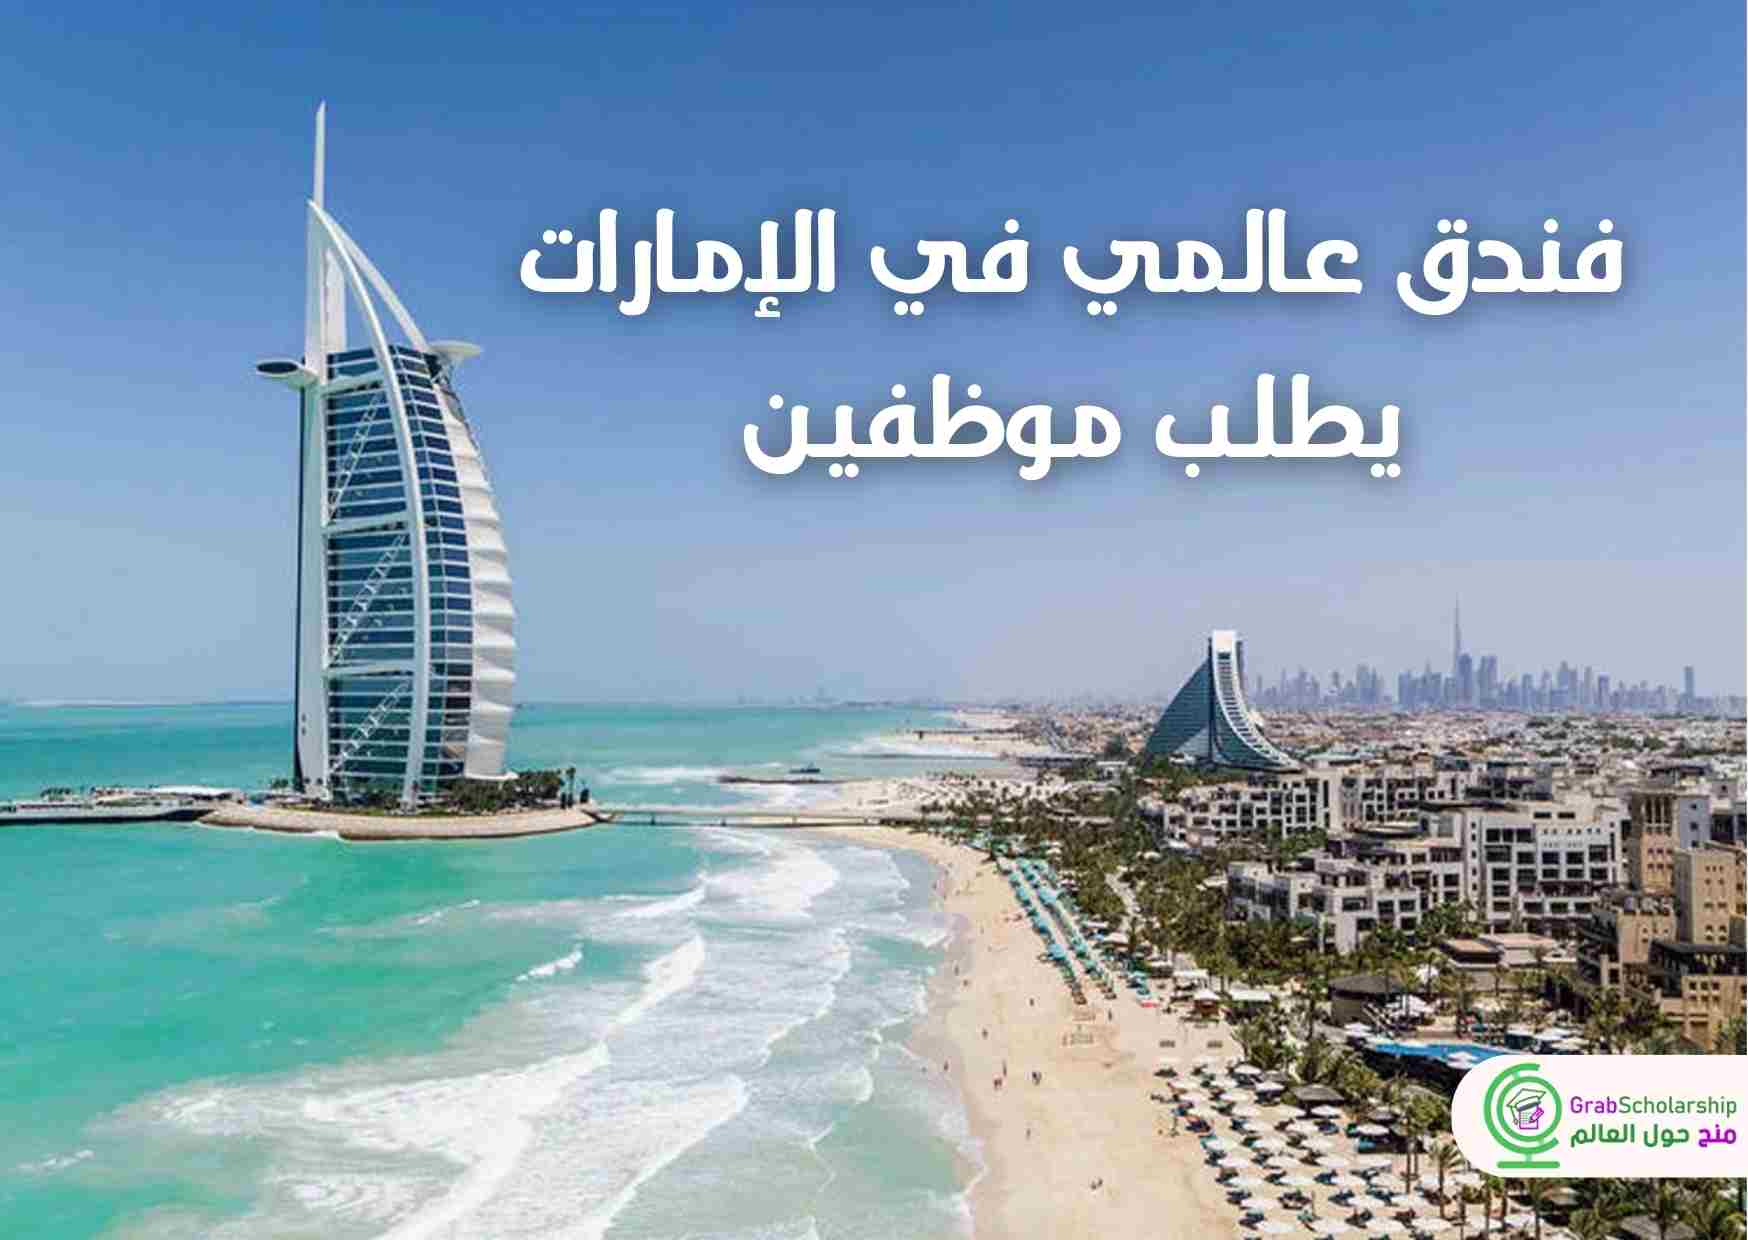 فندق عالمي في الإمارات يطلب موظفين براتب مميز مع التأشيرة